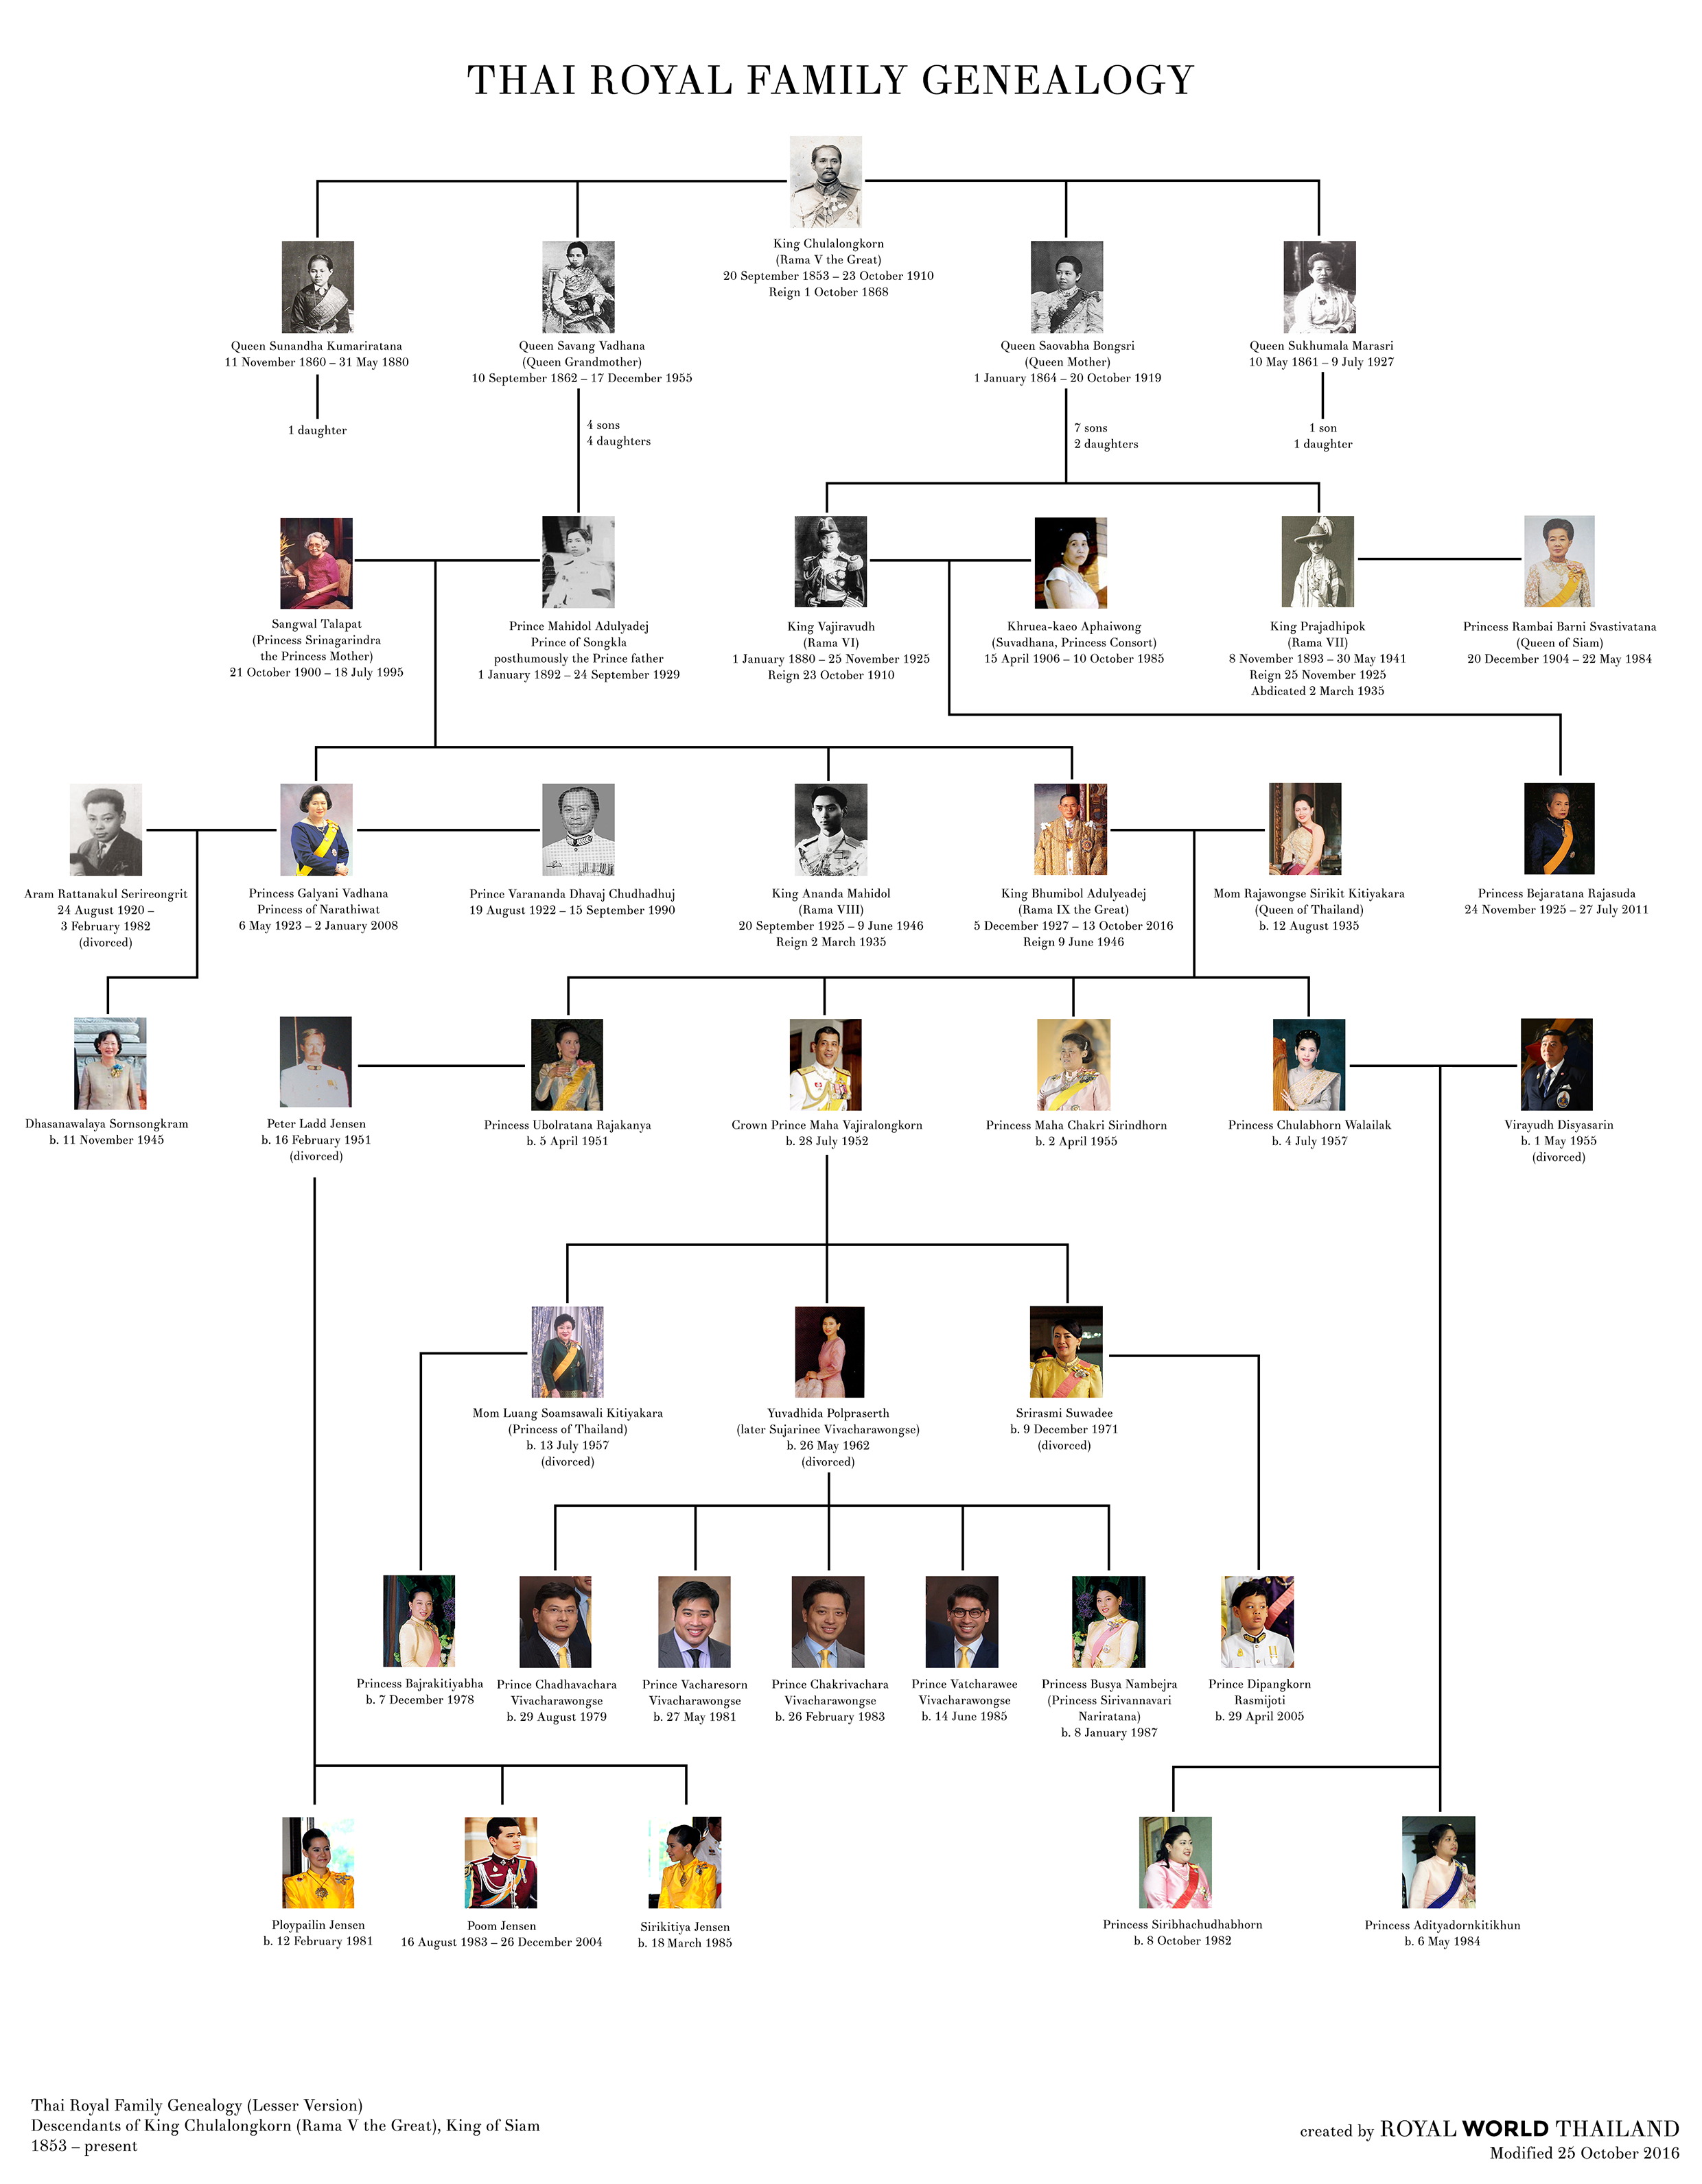 タイ王室の家系図を見てみよう！